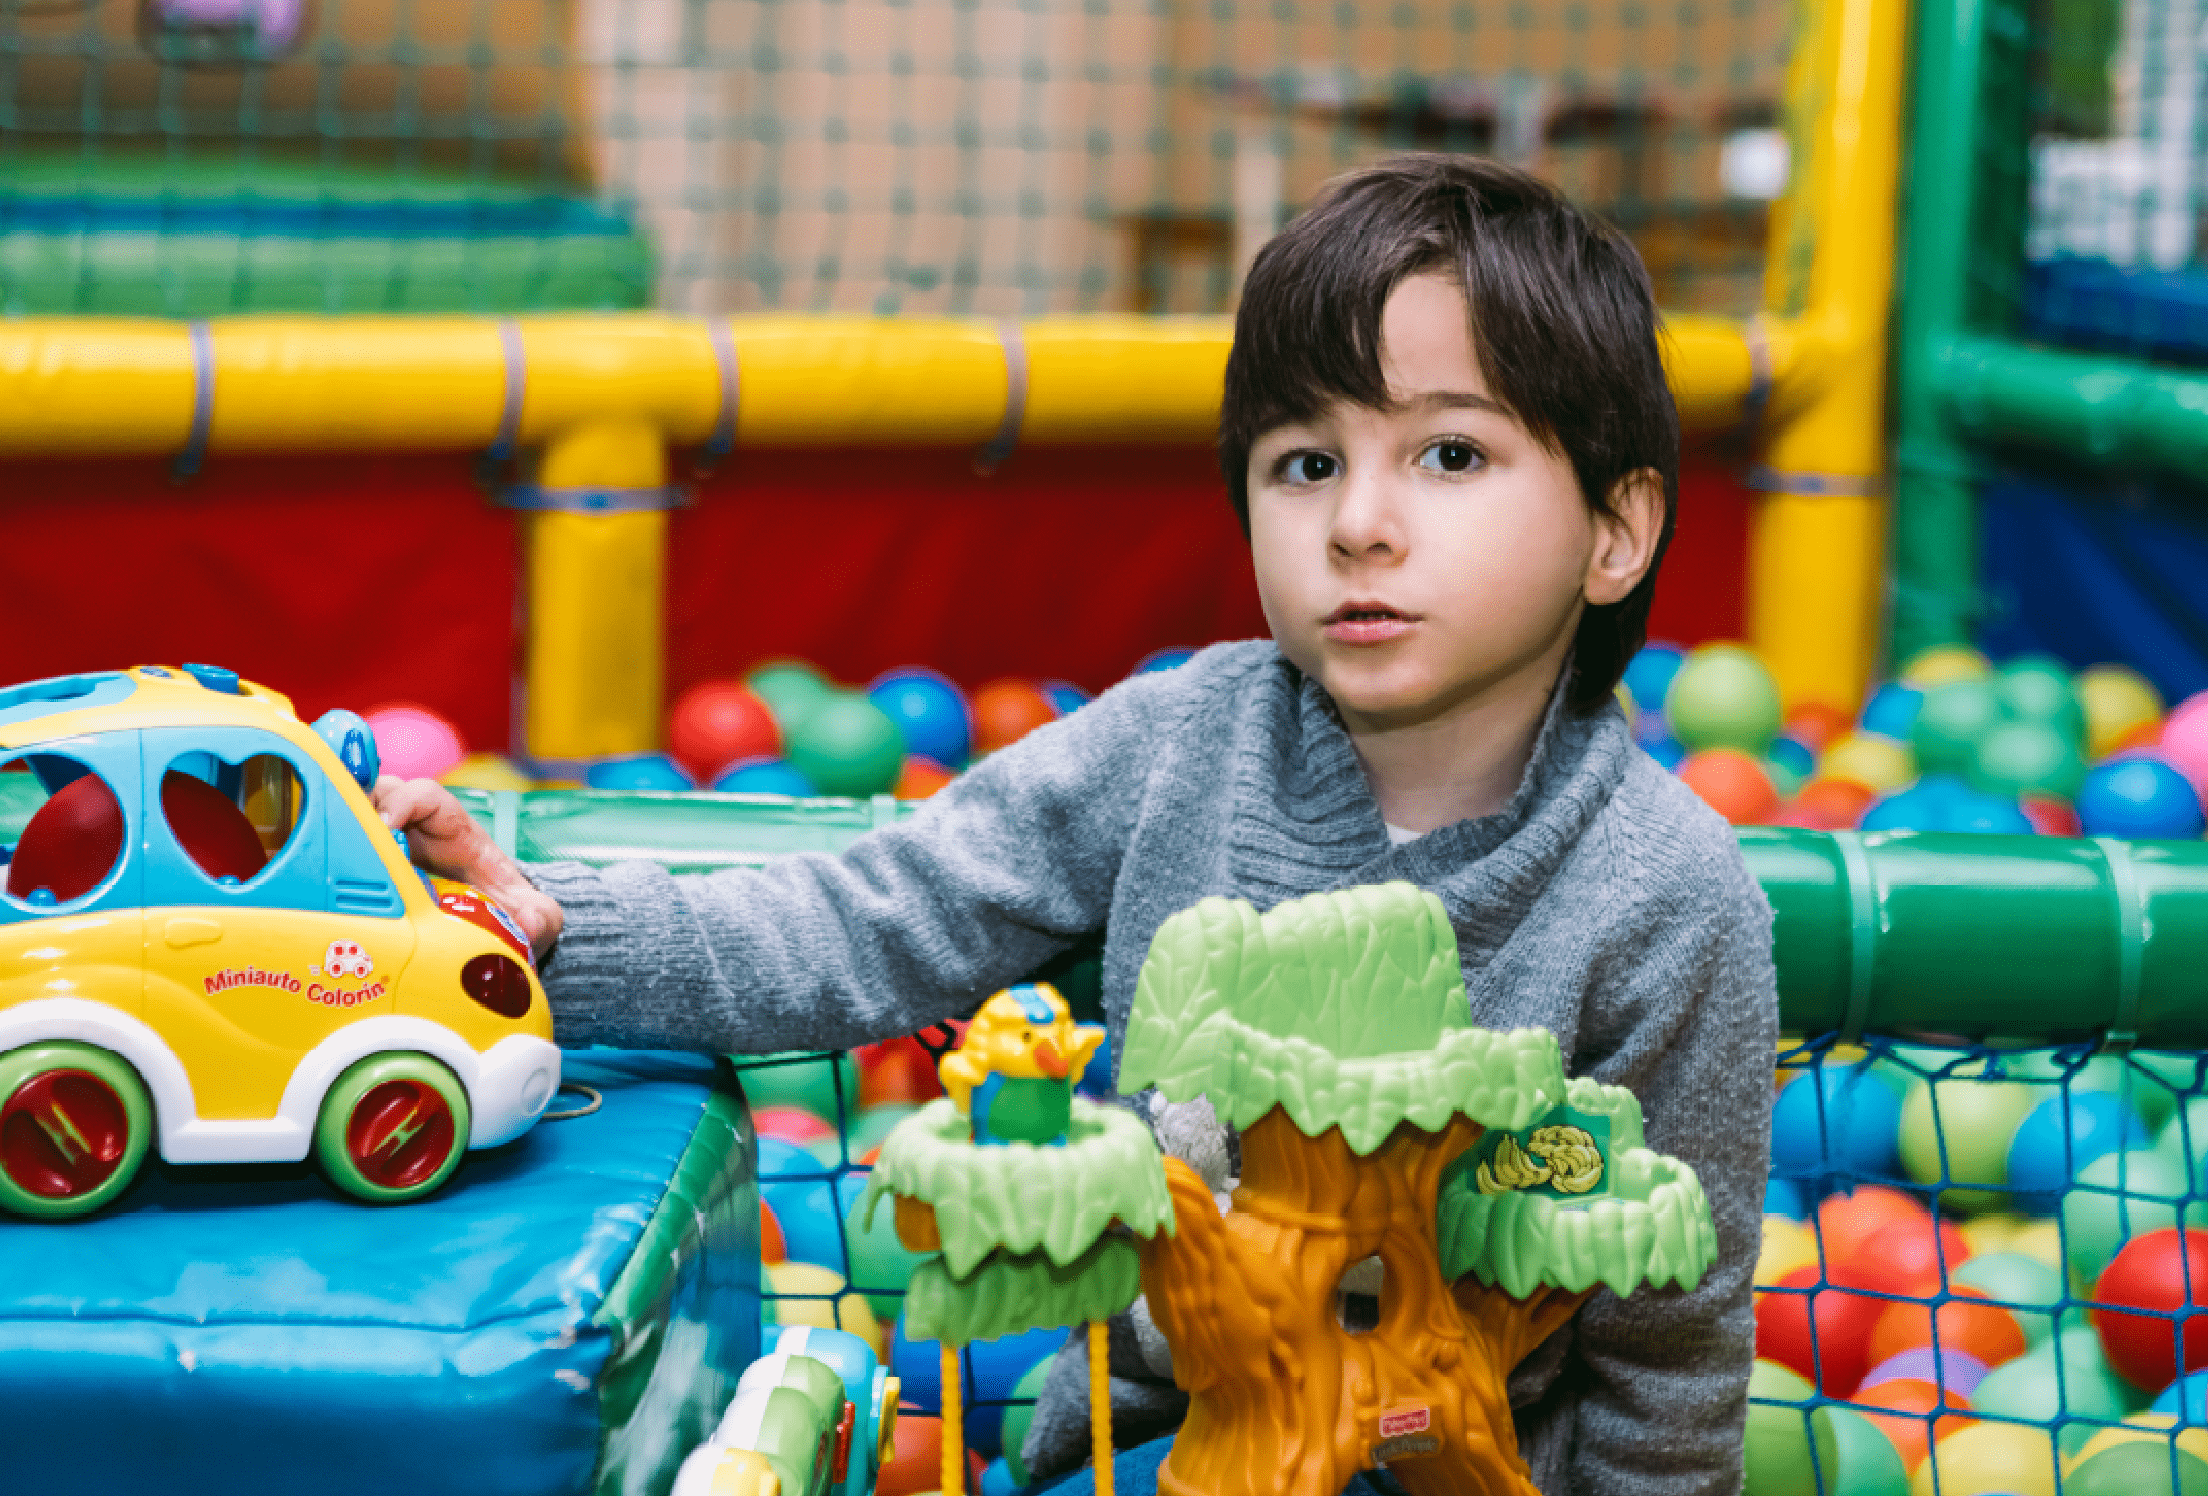 Un niño con autismo jugando en un parque infantil